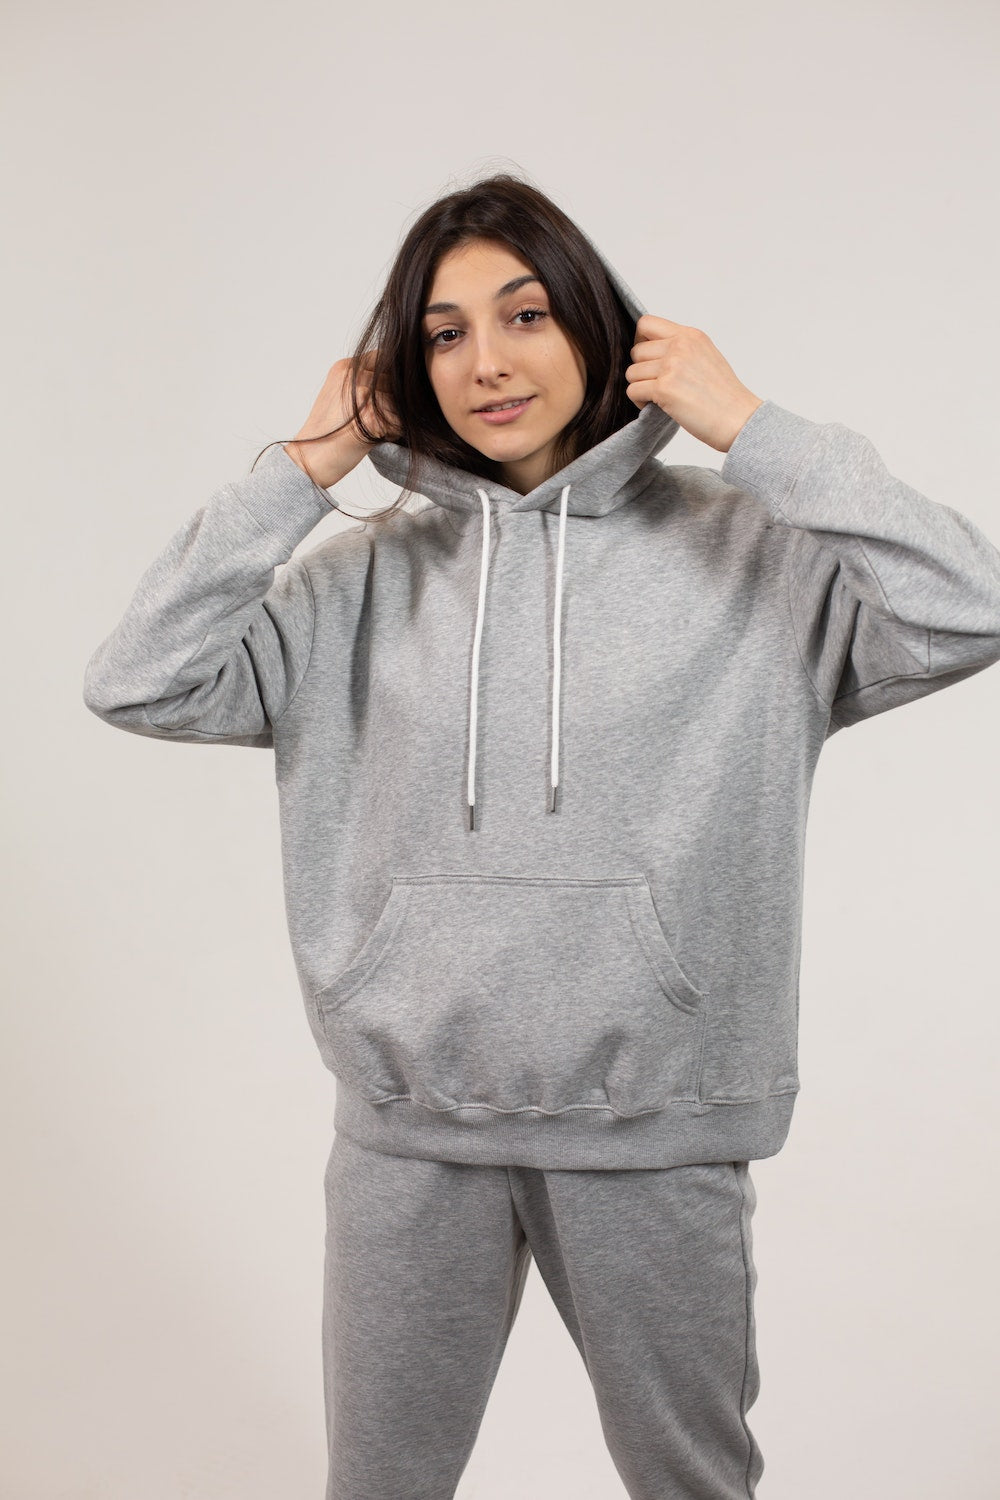 style grey sweatpants hoodie